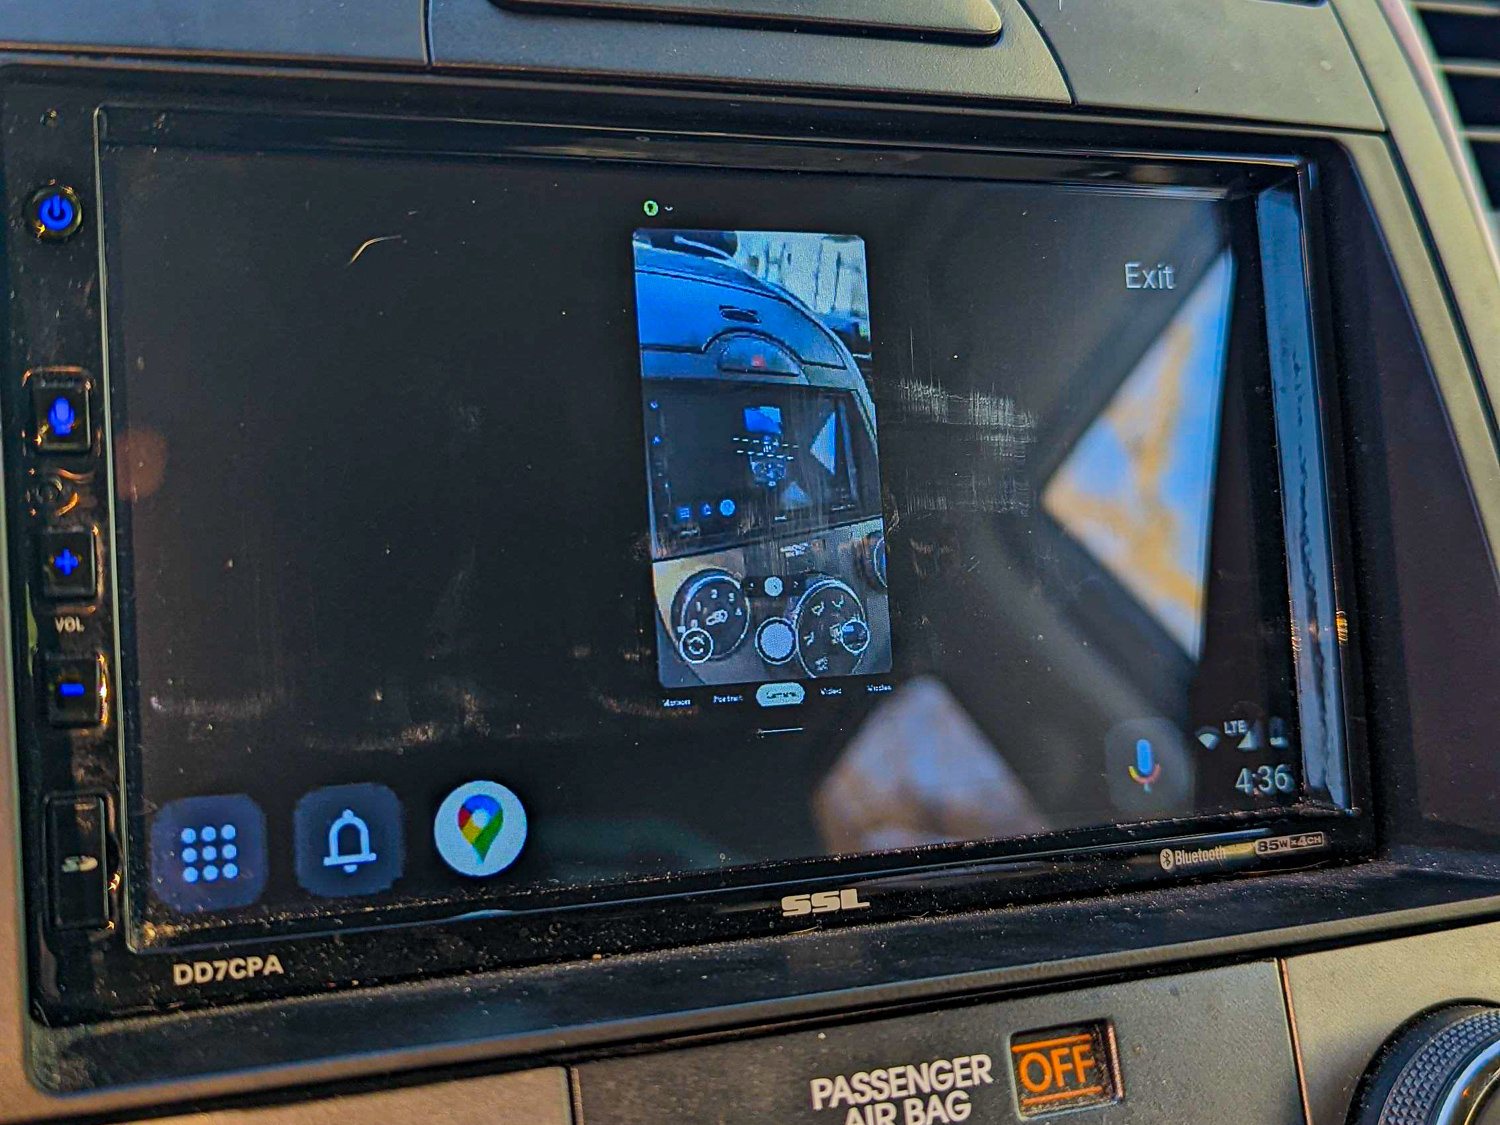 Quem já desbloqueou as novas funções conseguiu até projetar a câmera do smartphone na tela do carro